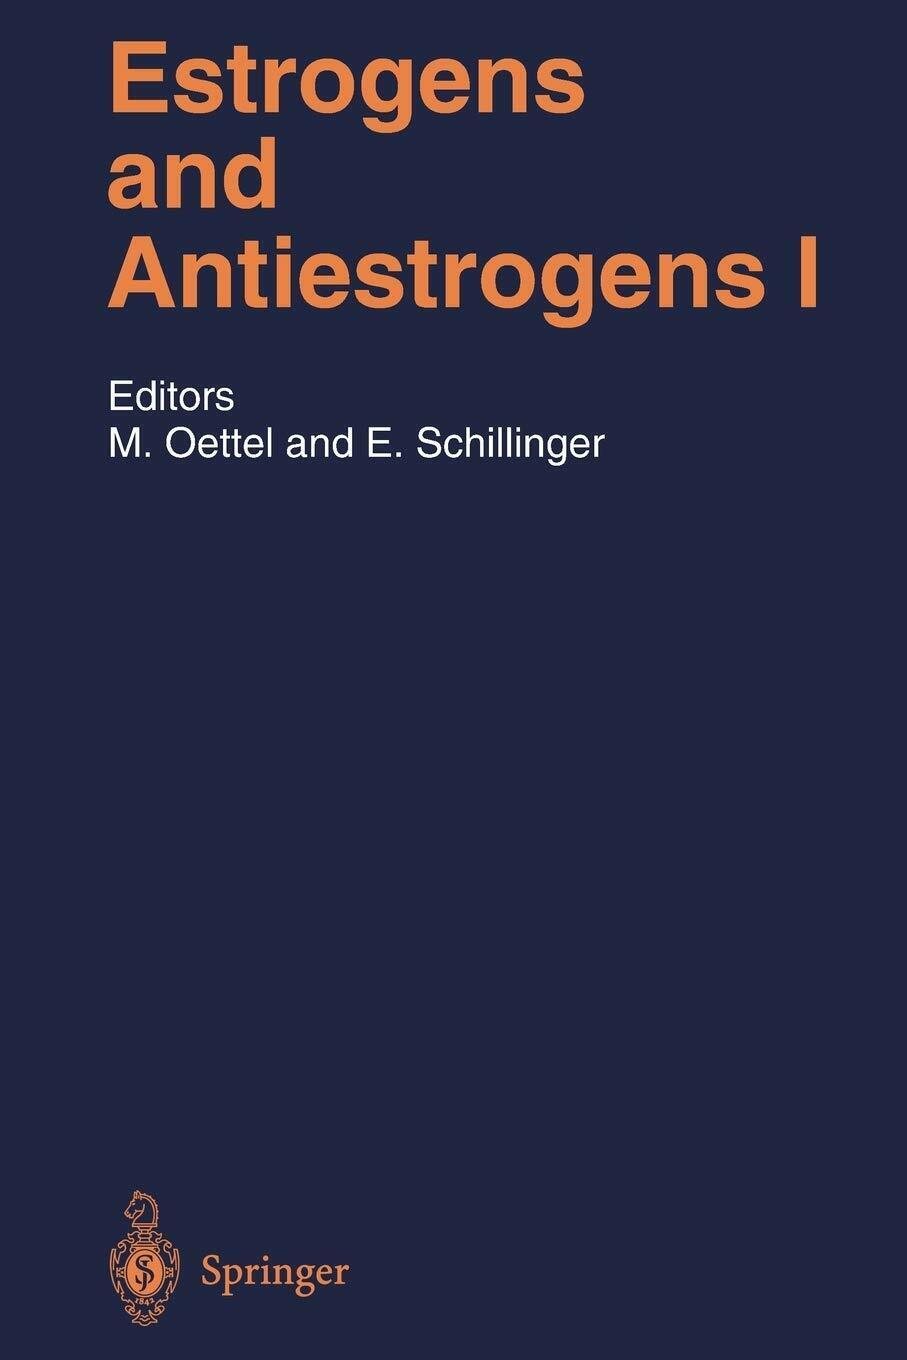 Estrogens and Antiestrogens I - Ekkehard Schillinger - Springer, 1999